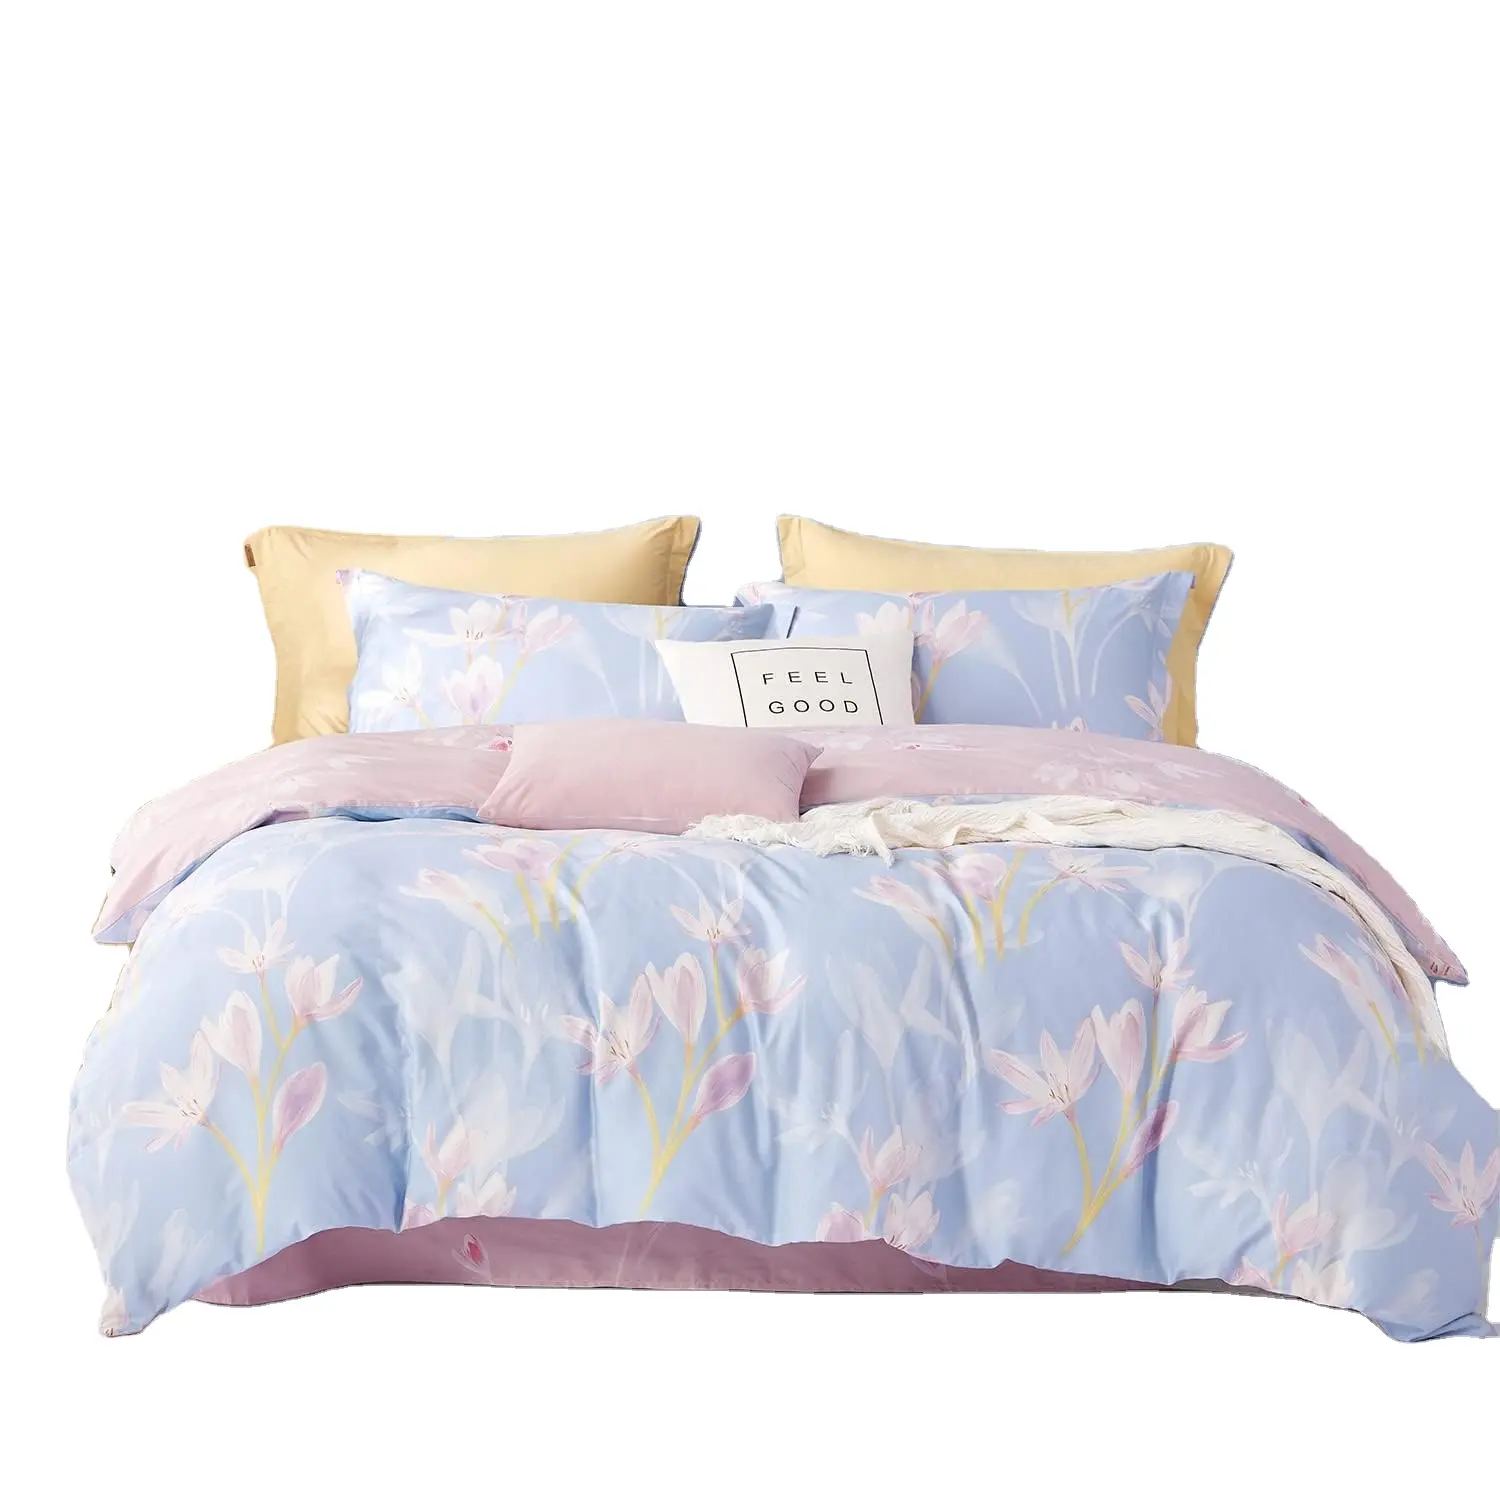 Leylak pembe çiçek çiçek yorgan yatak örtüsü seti kral boyutu 100% polyester 3 parça kızlar yatak yorgan yatak örtüsü seti